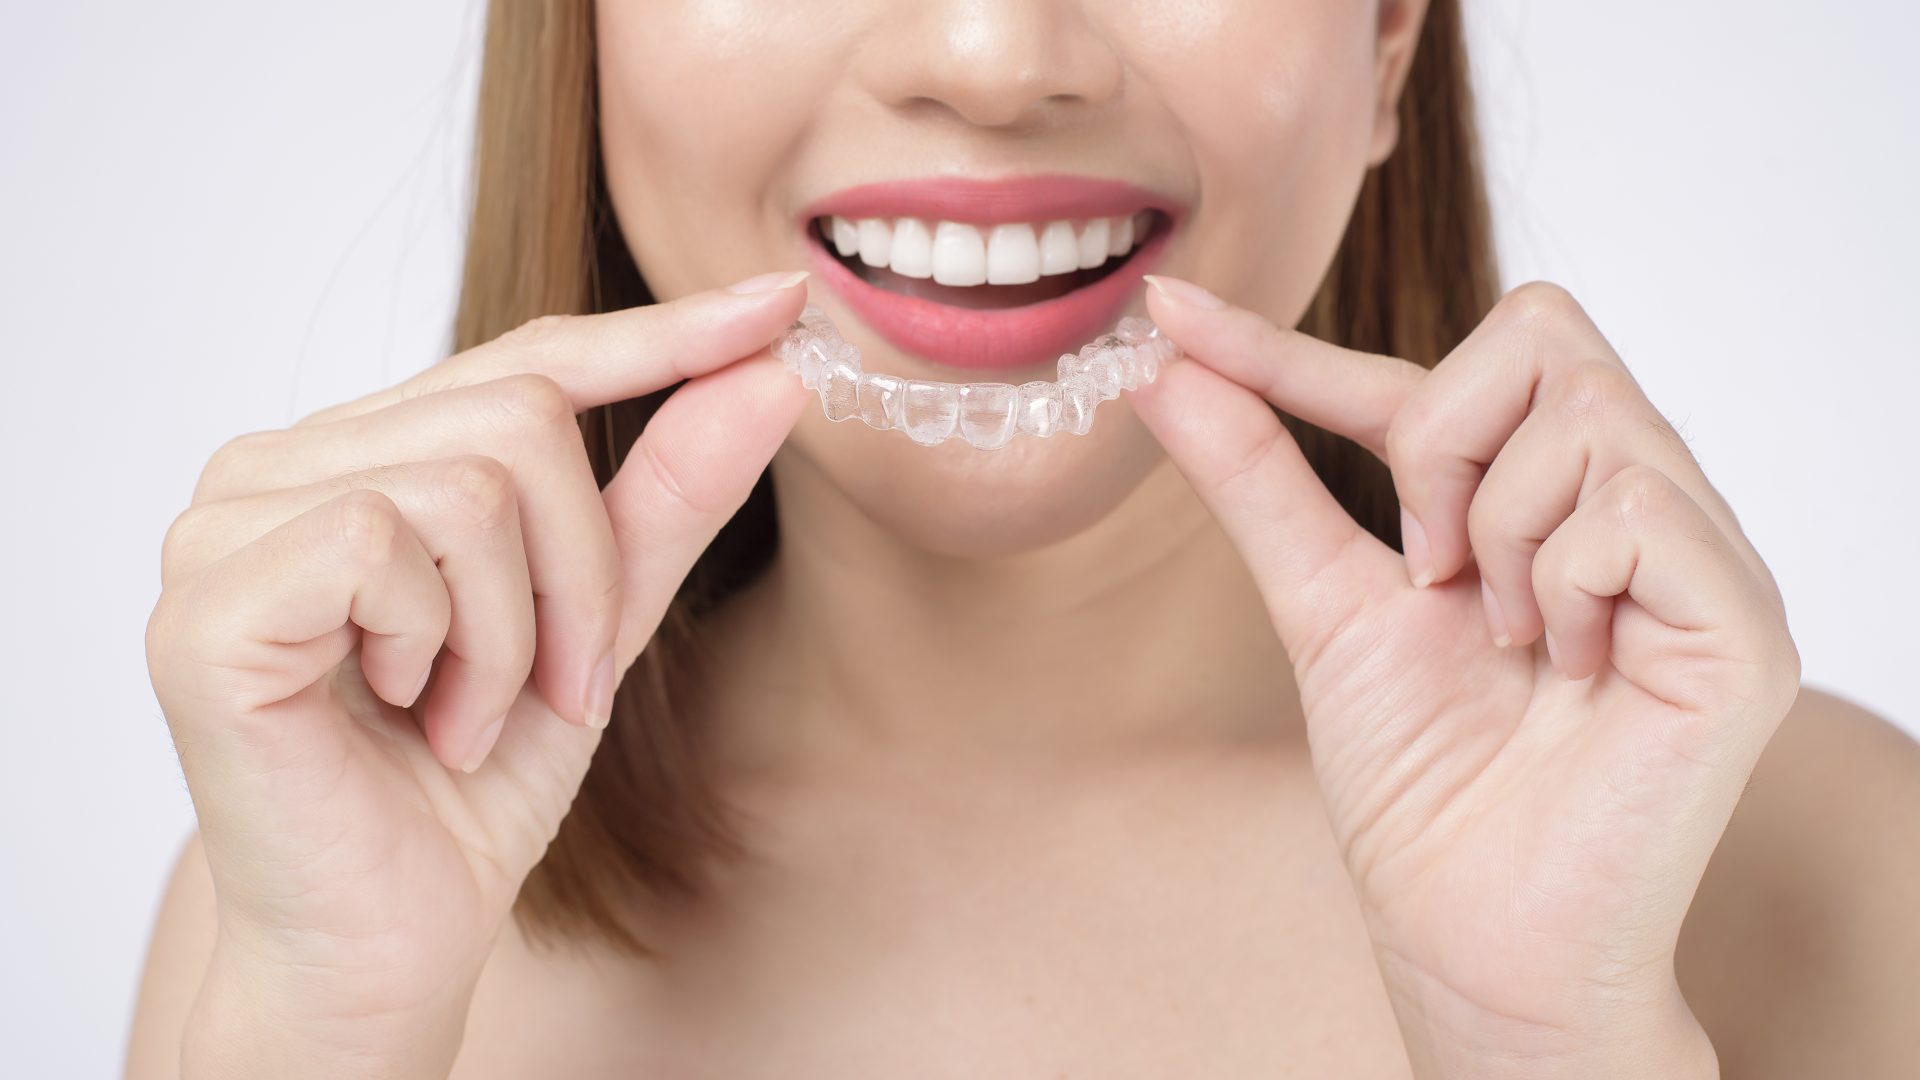 mujer sonriente joven que sostiene apoyos invisalign estudio salud dental concepto ortodoncia